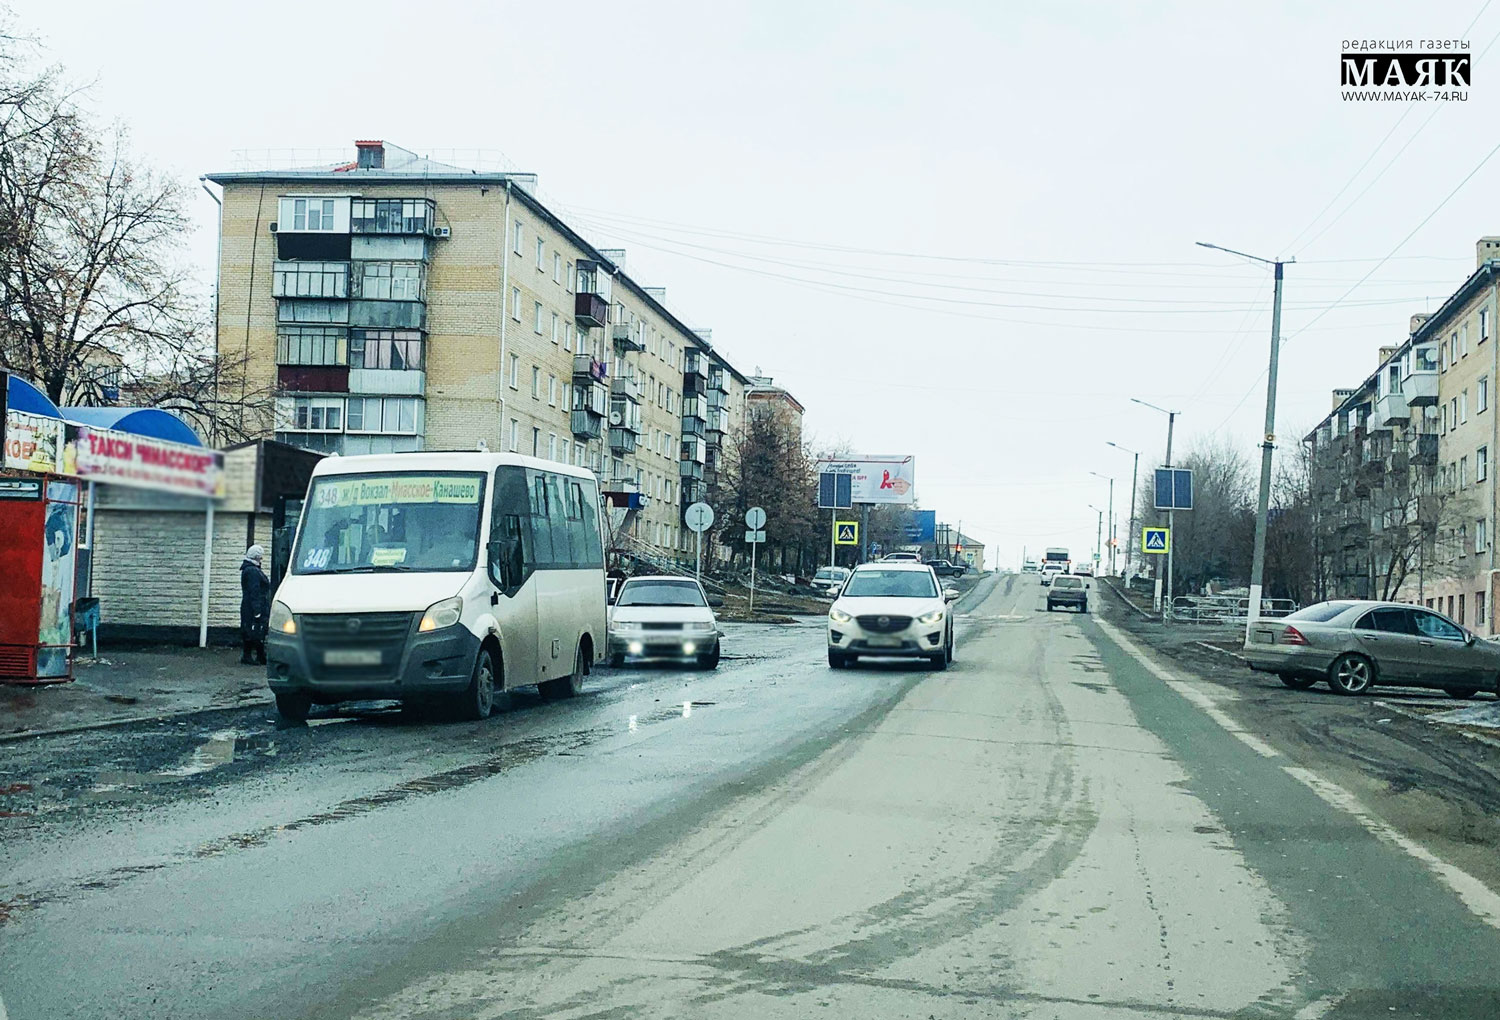 Автобус №348 из Красноармейского района не изменит маршрут